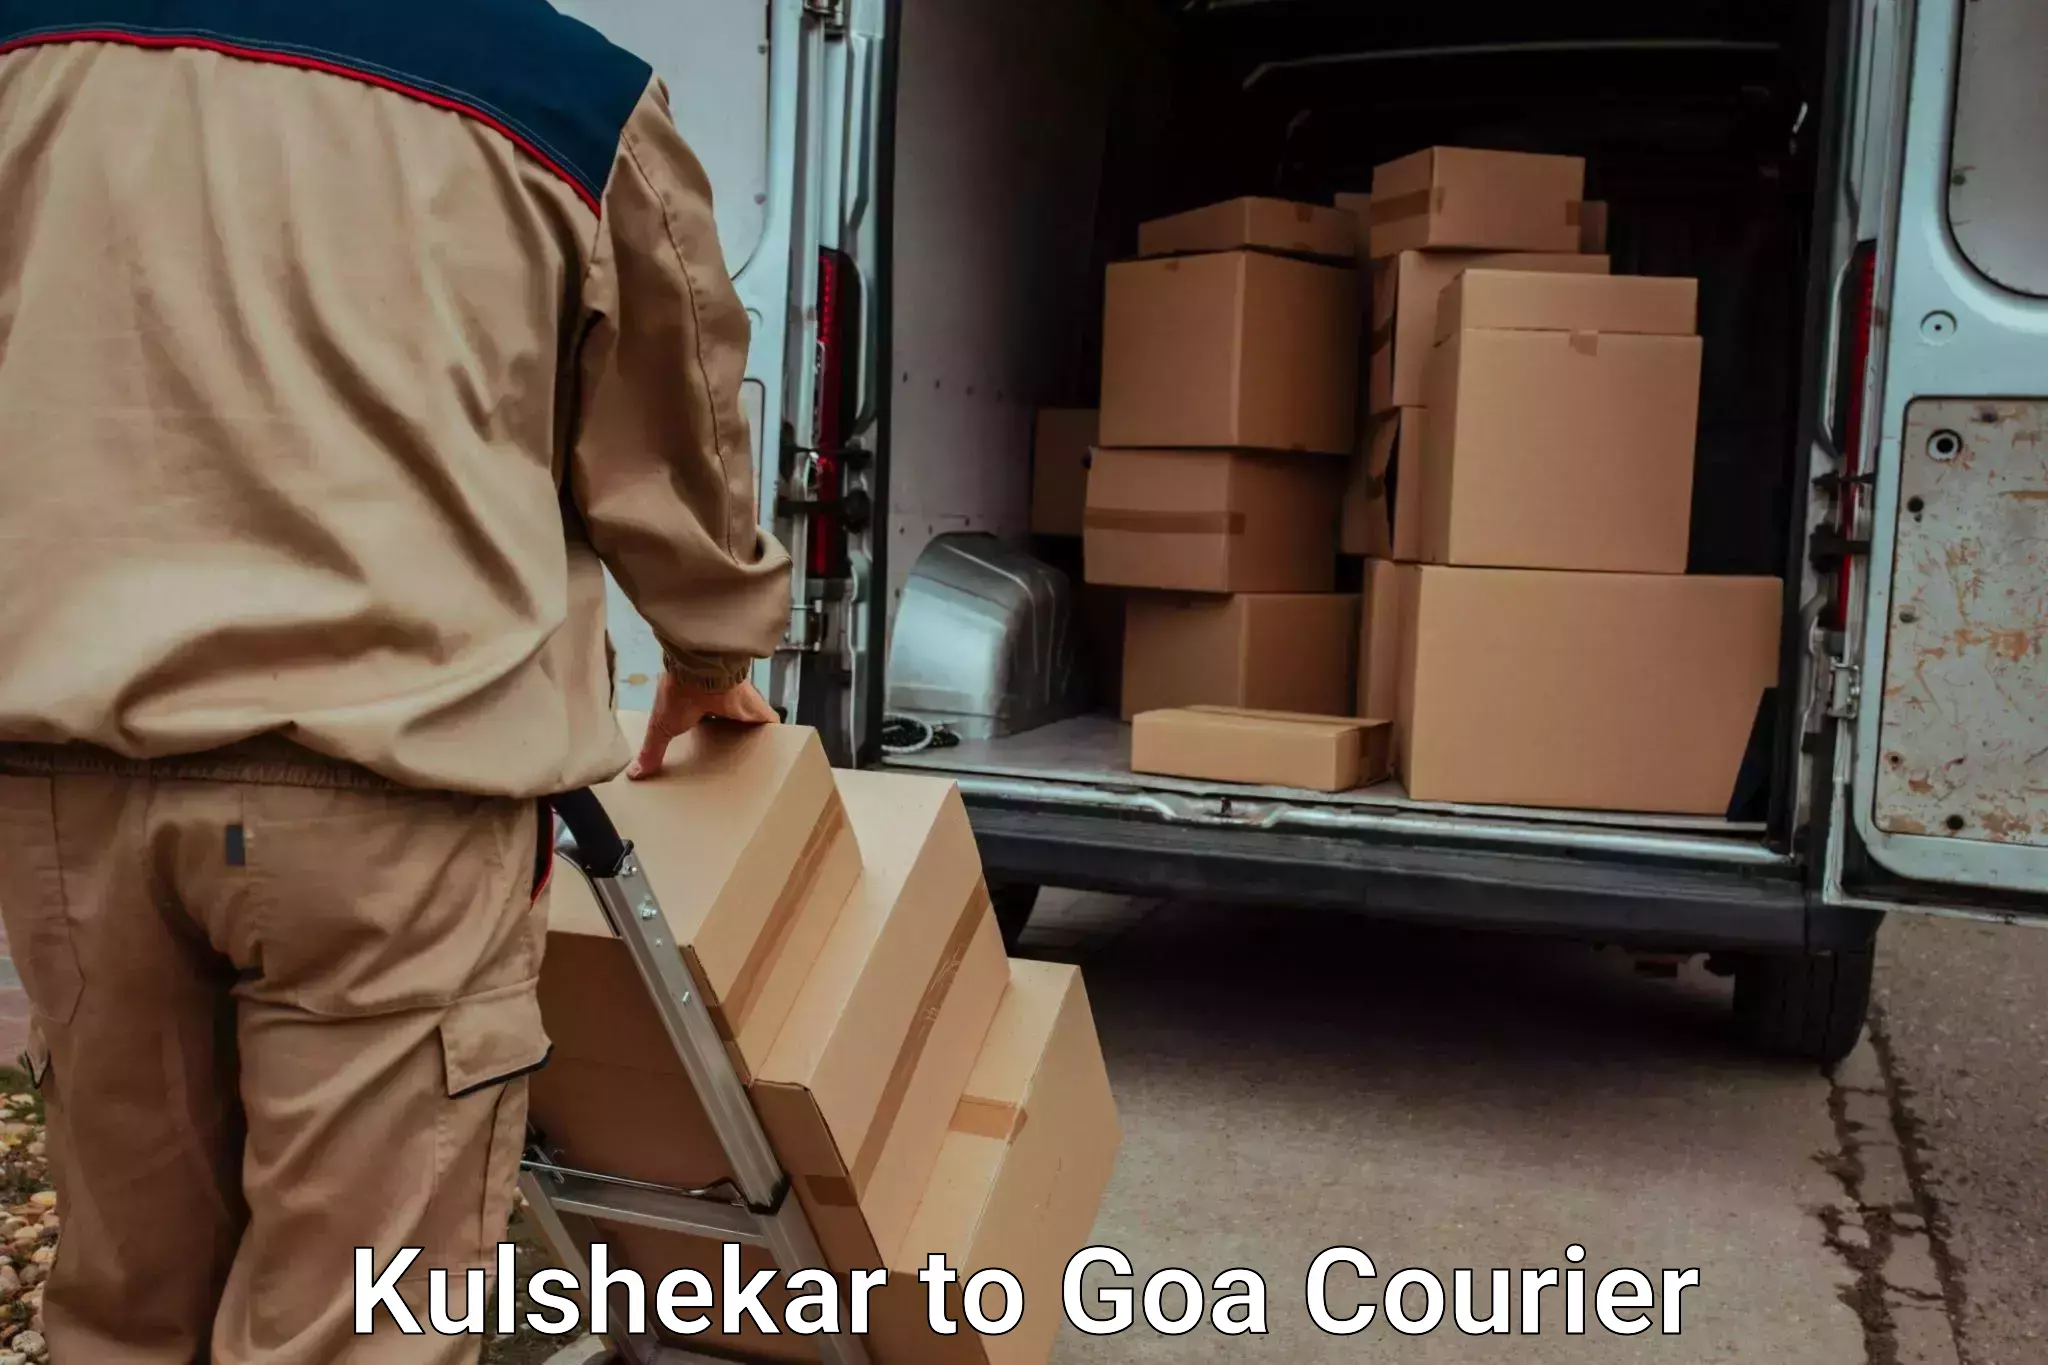 Automated luggage transport Kulshekar to IIT Goa